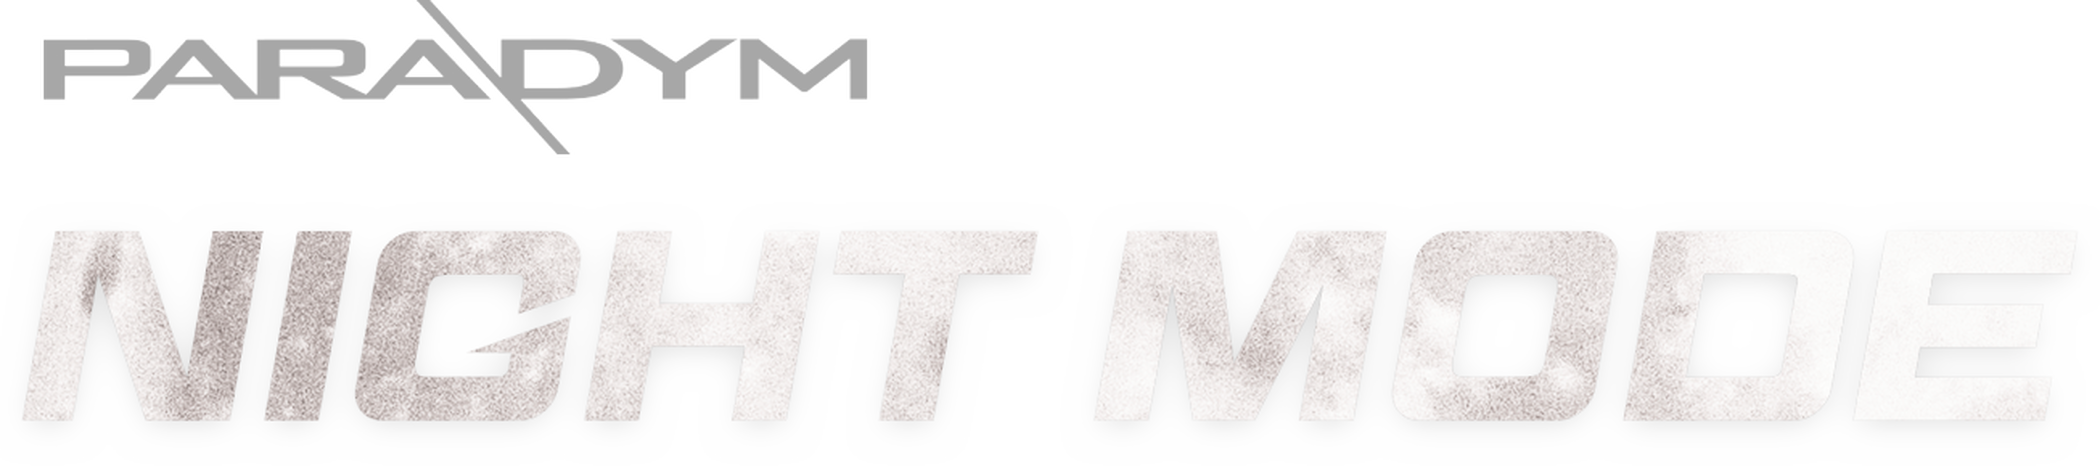 paradym night mode logo